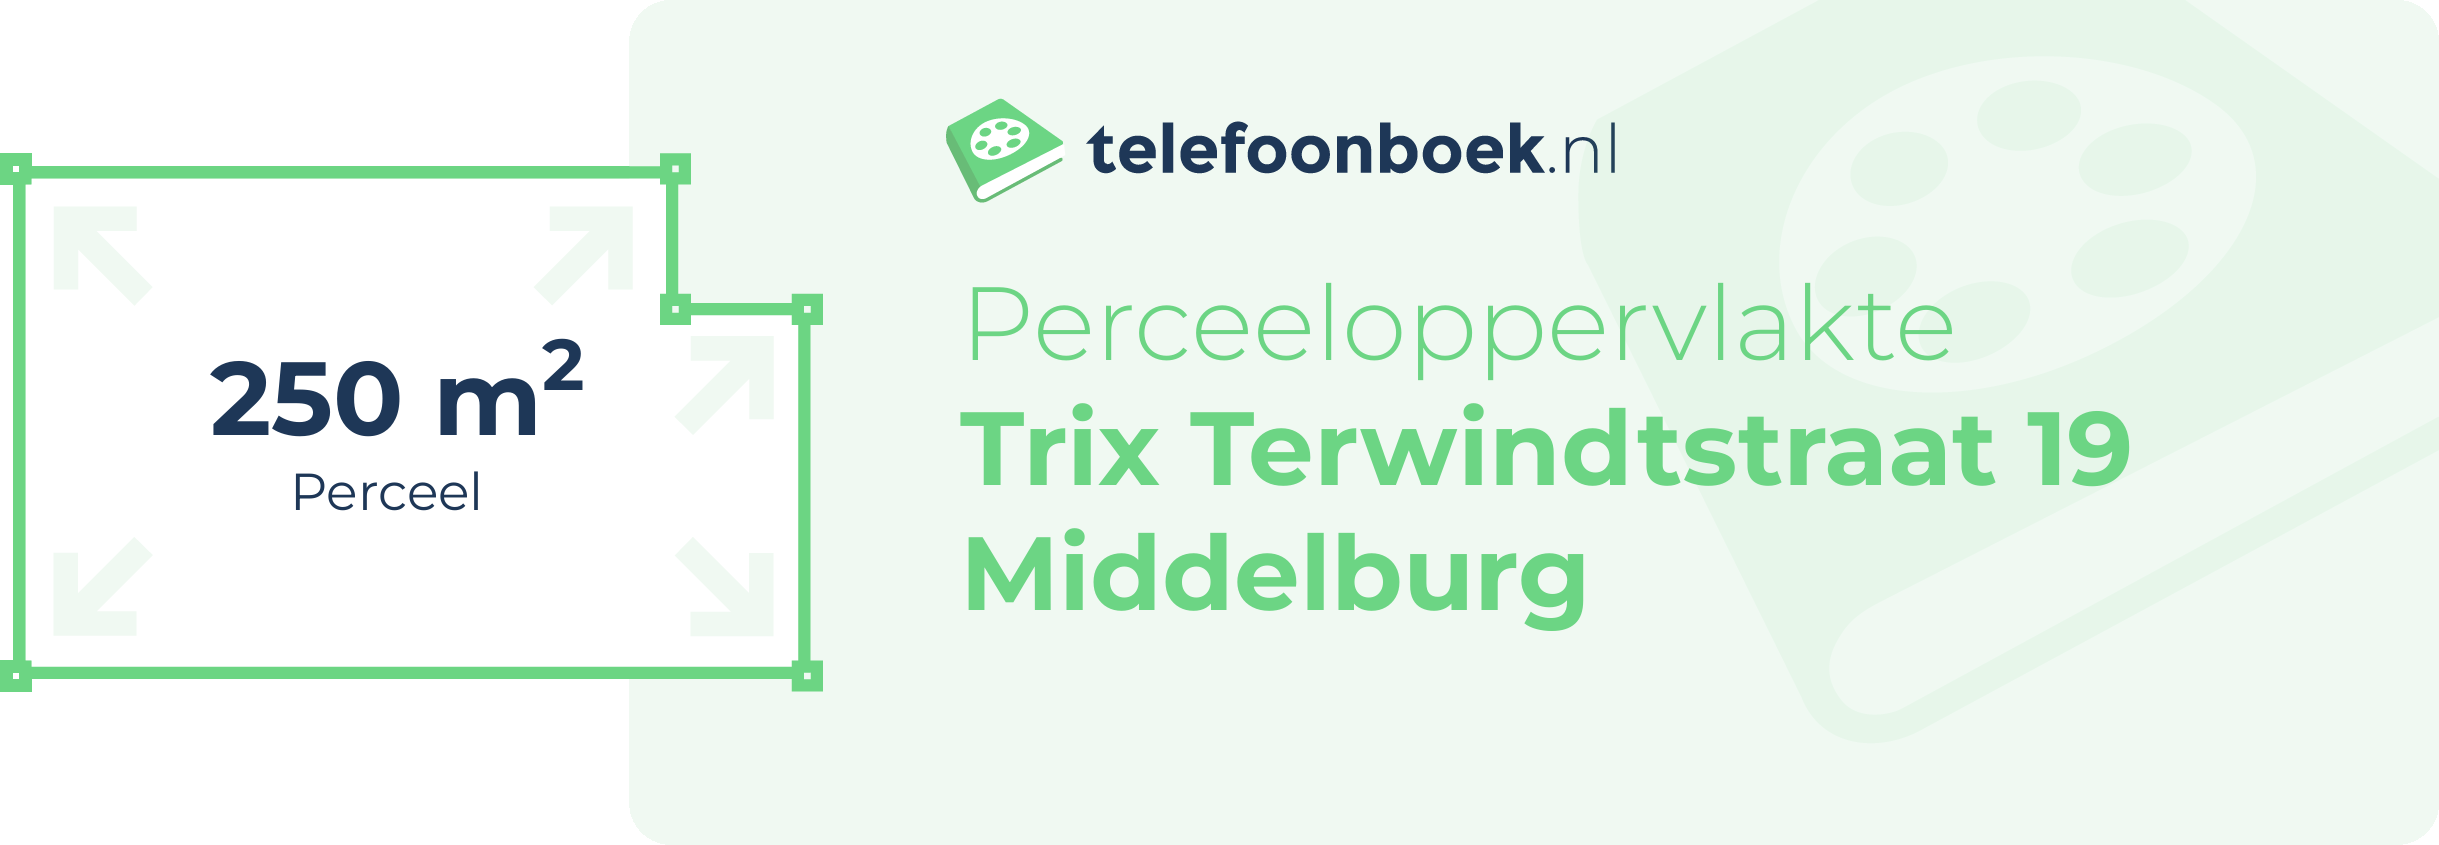 Perceeloppervlakte Trix Terwindtstraat 19 Middelburg